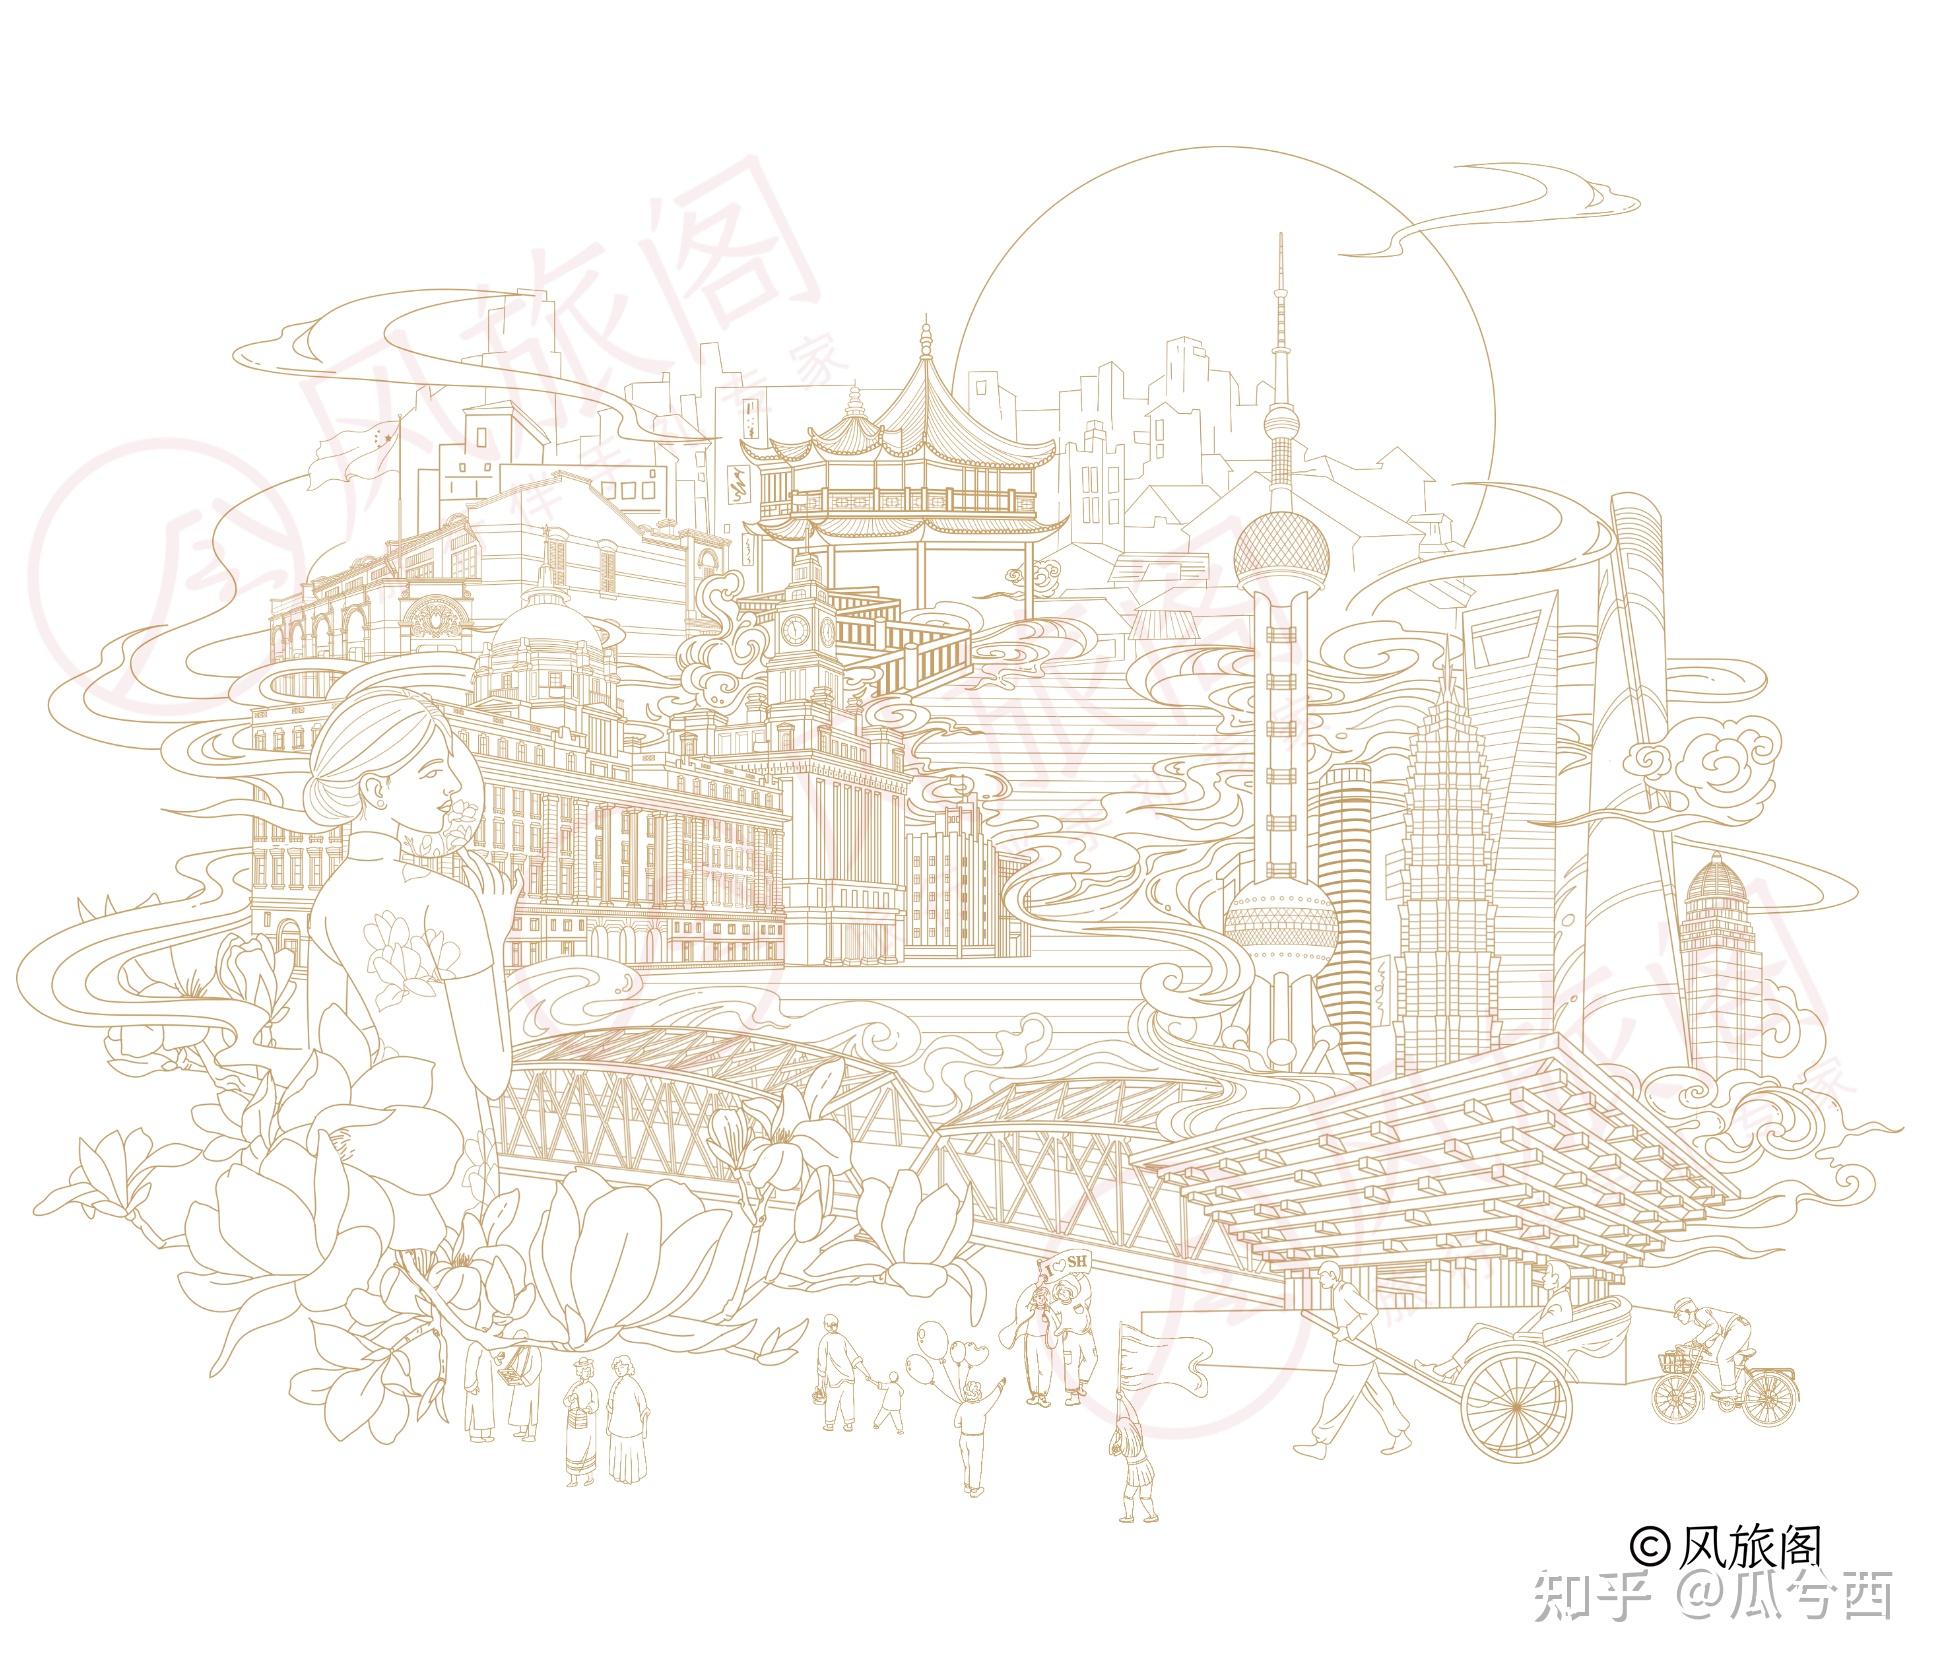 还为上海定制了一款上海限定笔记本,绘制了上海建筑插画作为其腰封